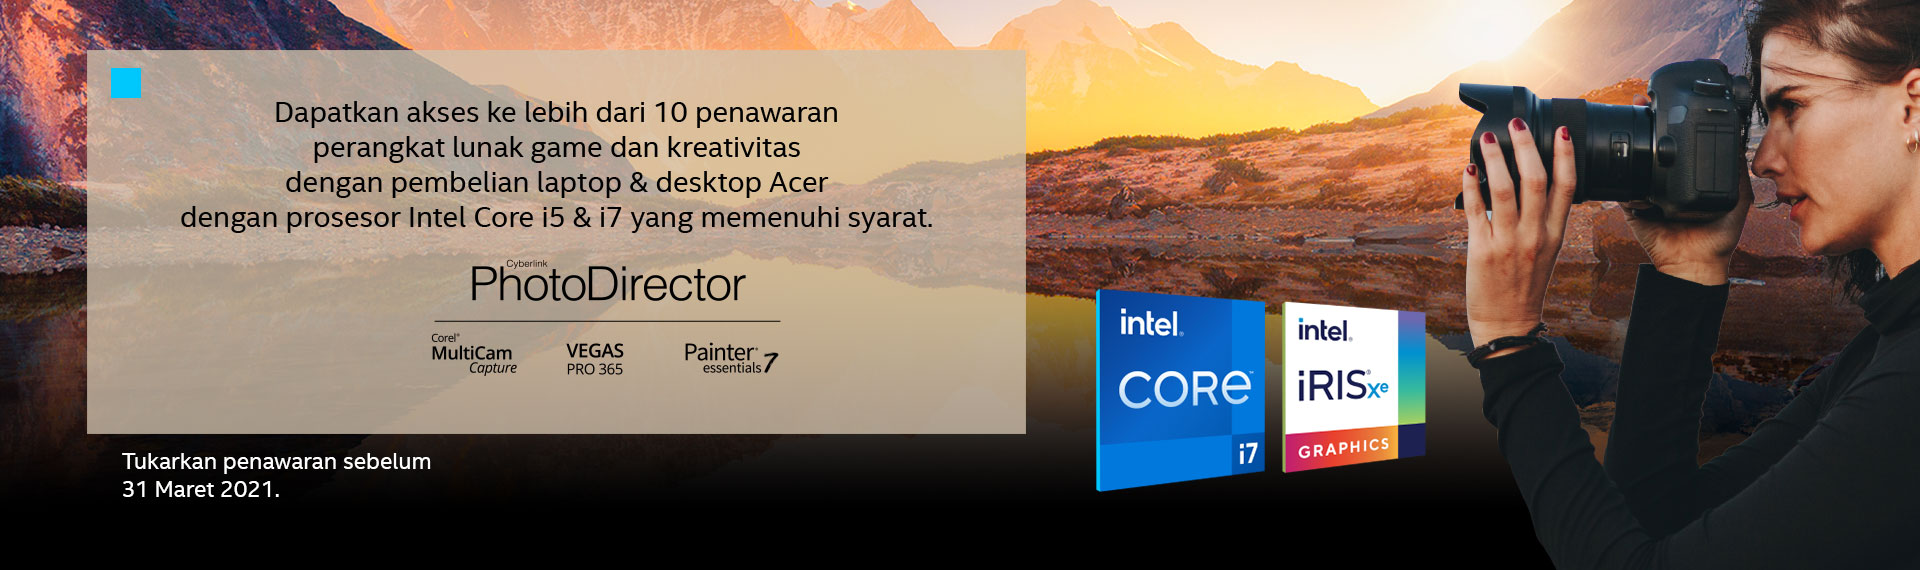 Beli Laptop dan Desktop Acer dengan Prosesor Intel, Dapat Software Bundle Senilai Rp6 Juta!